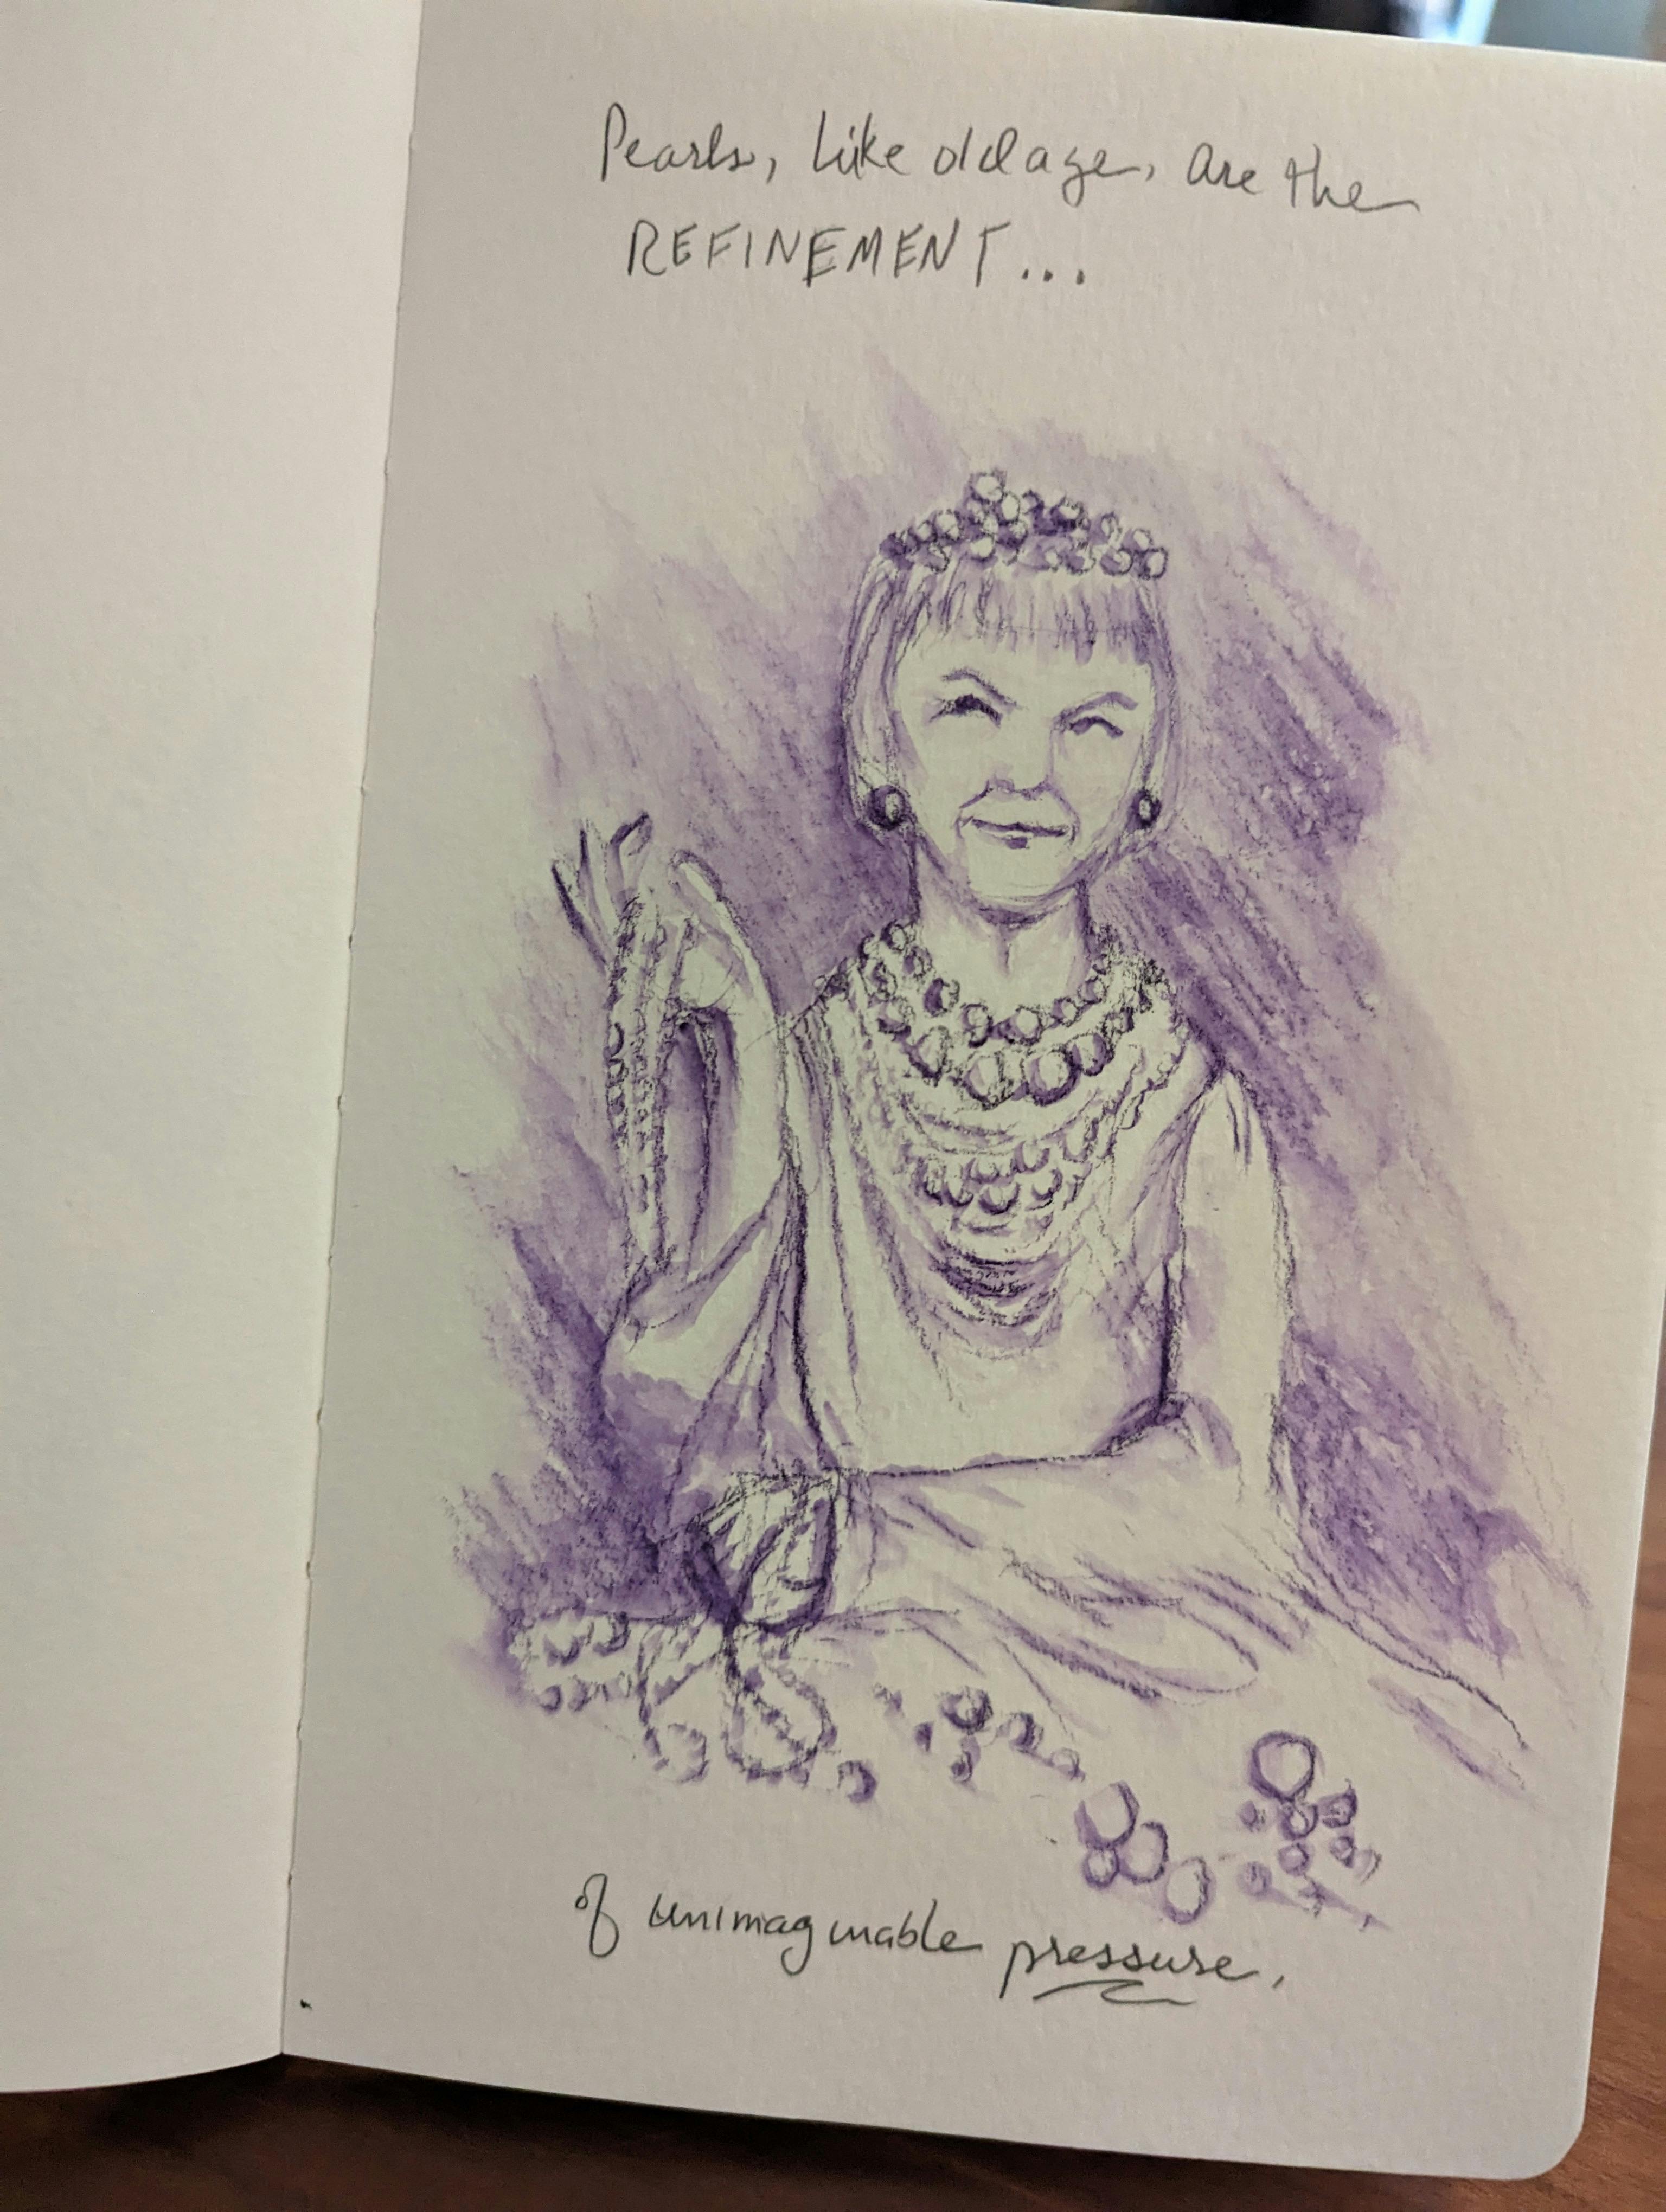 inkwash sketch of an elderly woman festooned with pearlss